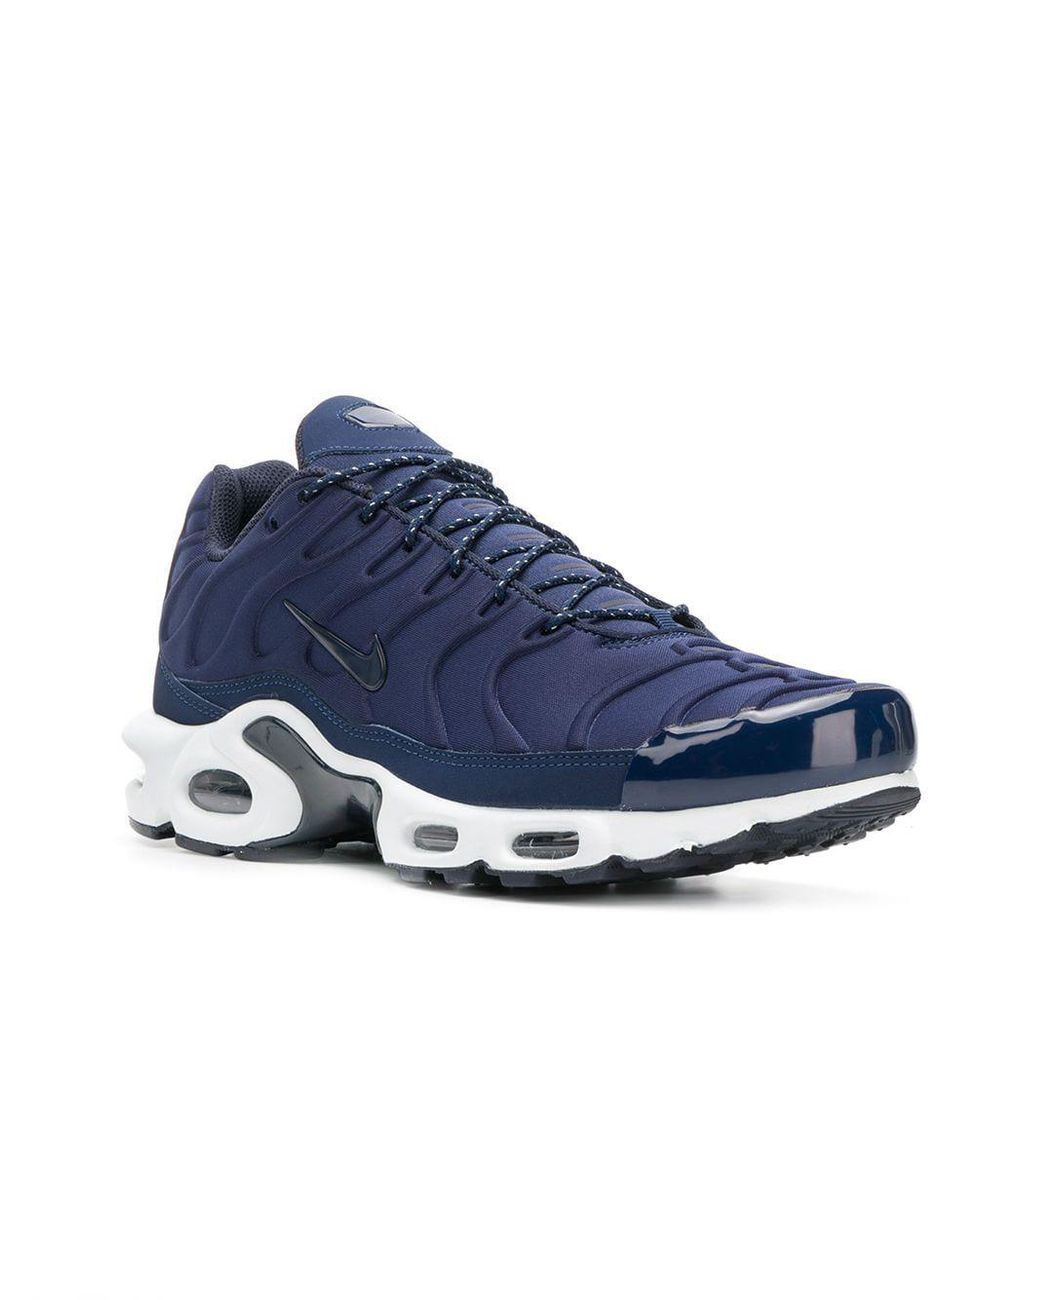 Zapatillas TN Air Max Plus Nike de Caucho de color Azul para hombre | Lyst